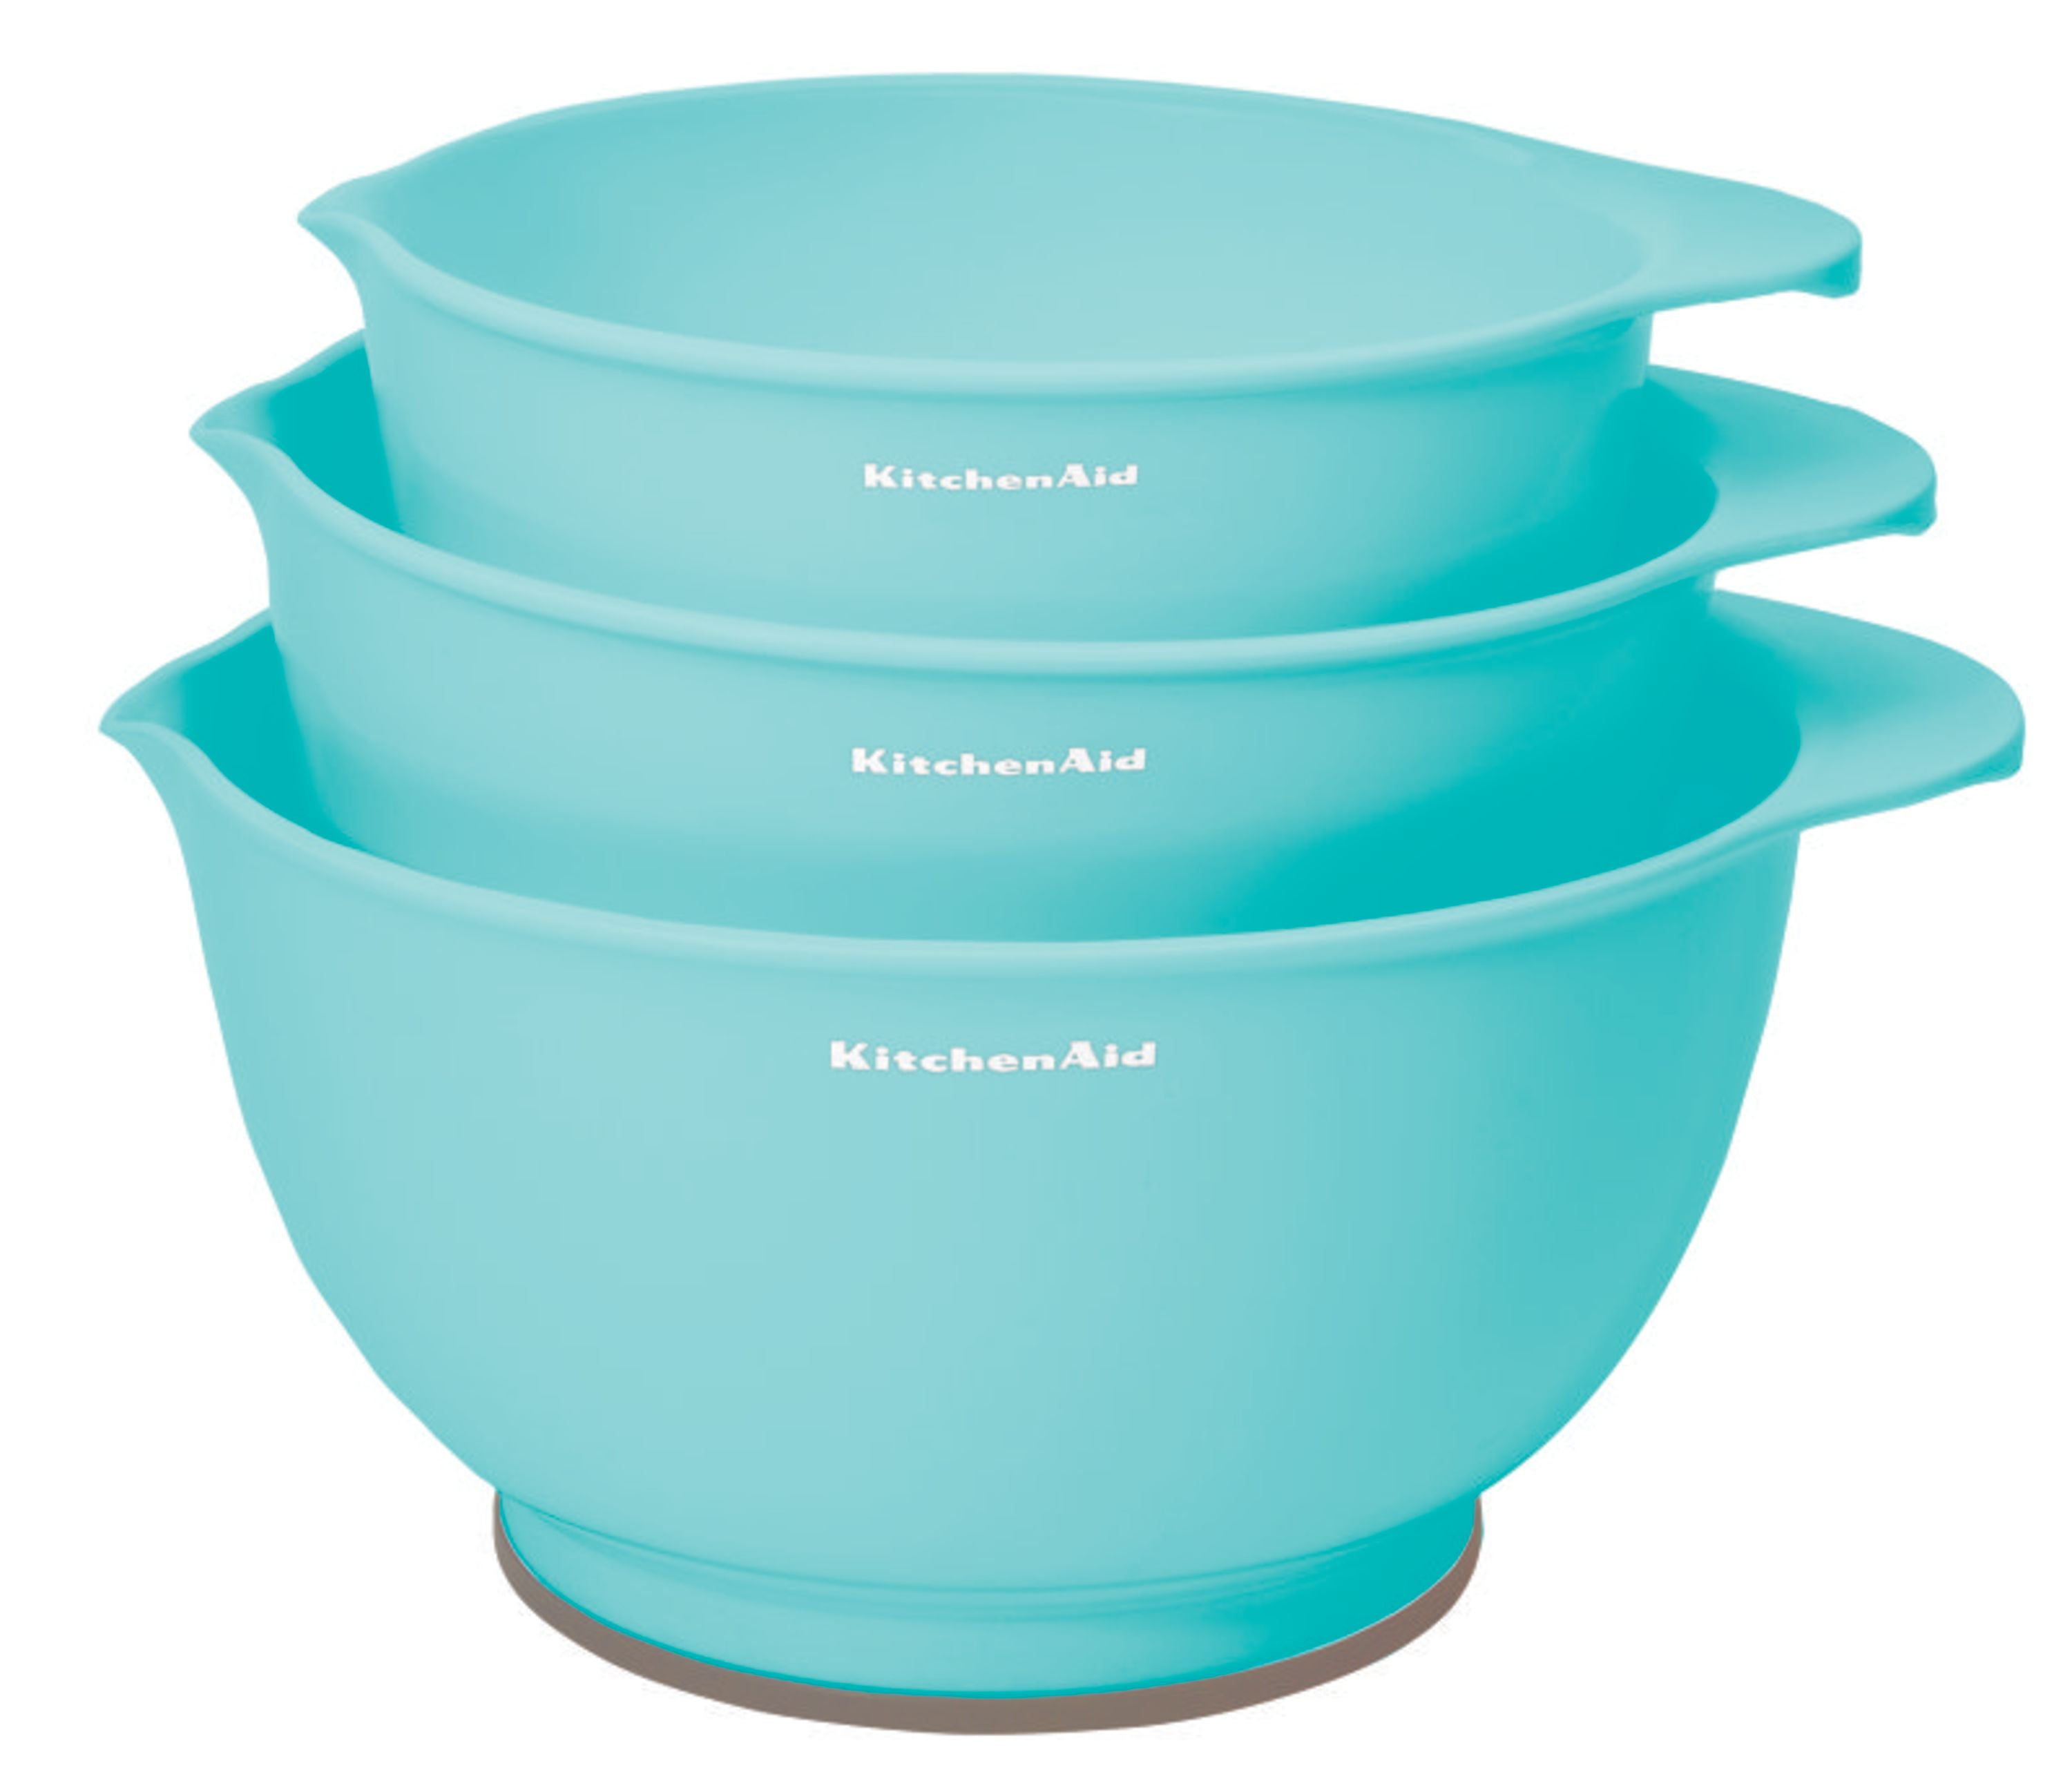 Lifetime Brands KitchenAid Classic Mixing Bowls, Set of 5, Aqua Sky 2